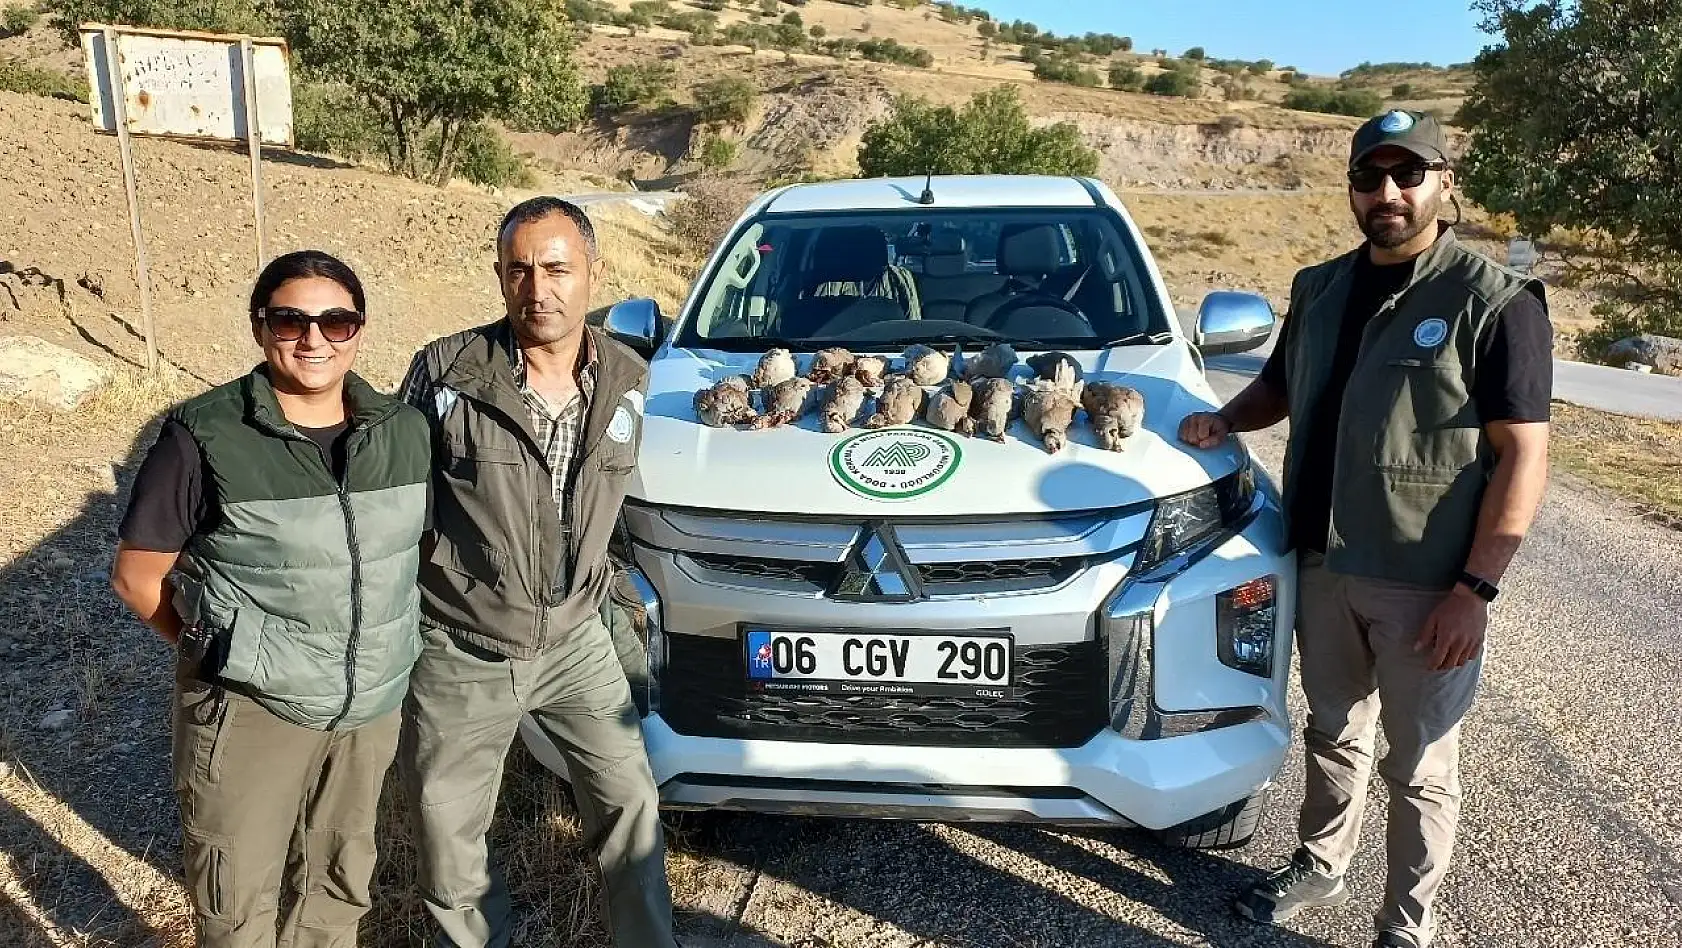 Tunceli'de avlanma ihlali gerçekleştiren 5 kişi hakkında işlem başlatıldı